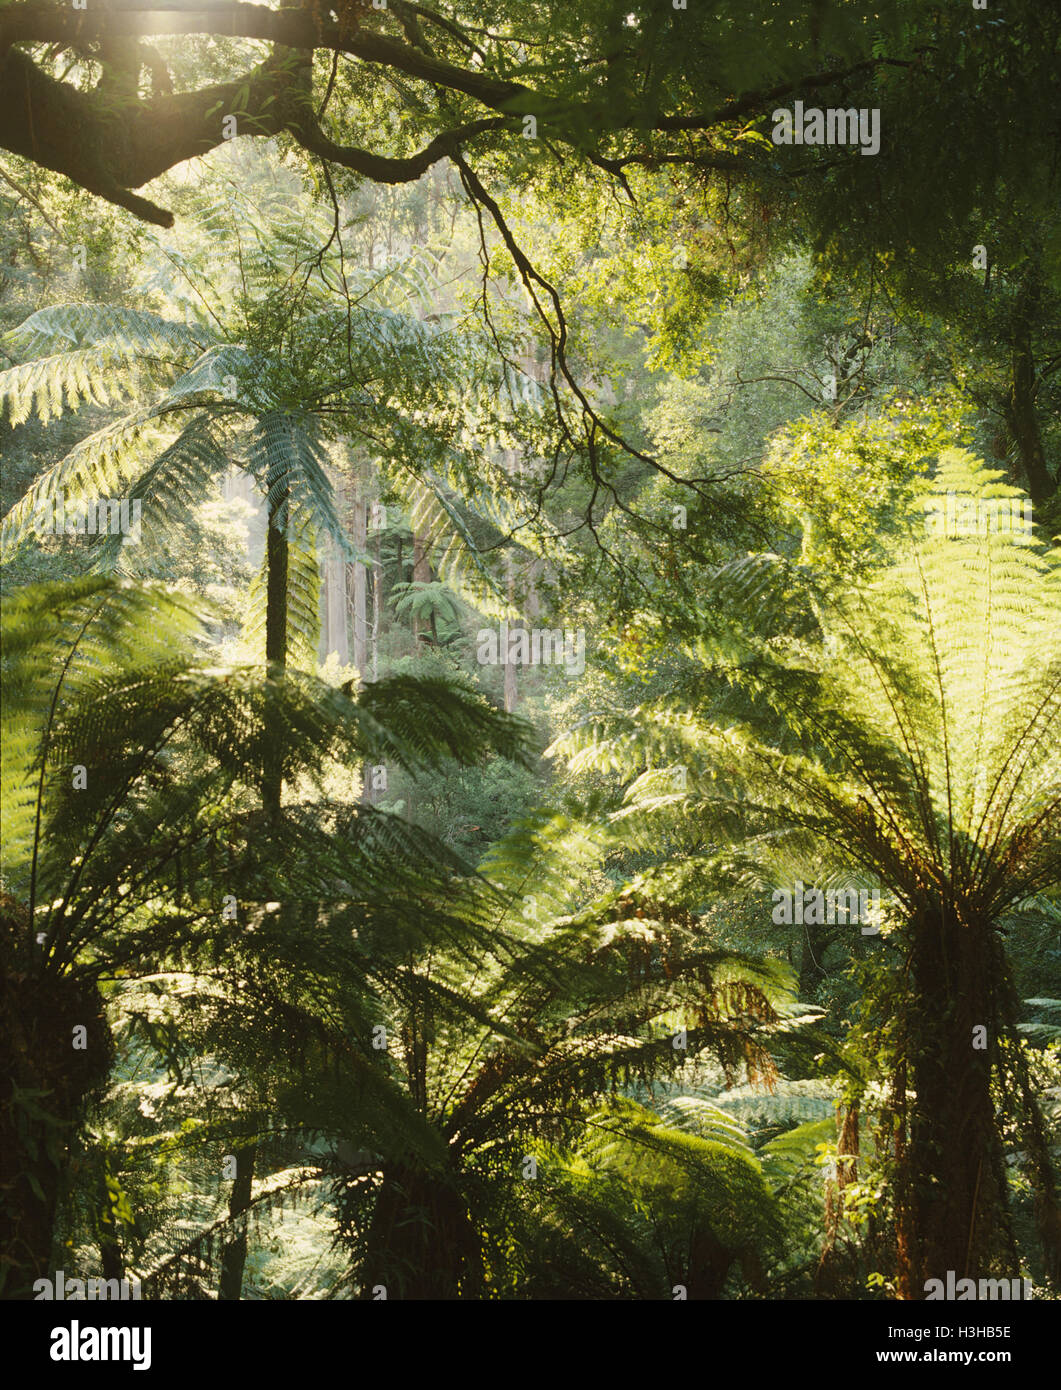 Les fougères arborescentes dans la fraîche forêt tropicale dont les fougères arborescentes (cyathea australis) Banque D'Images